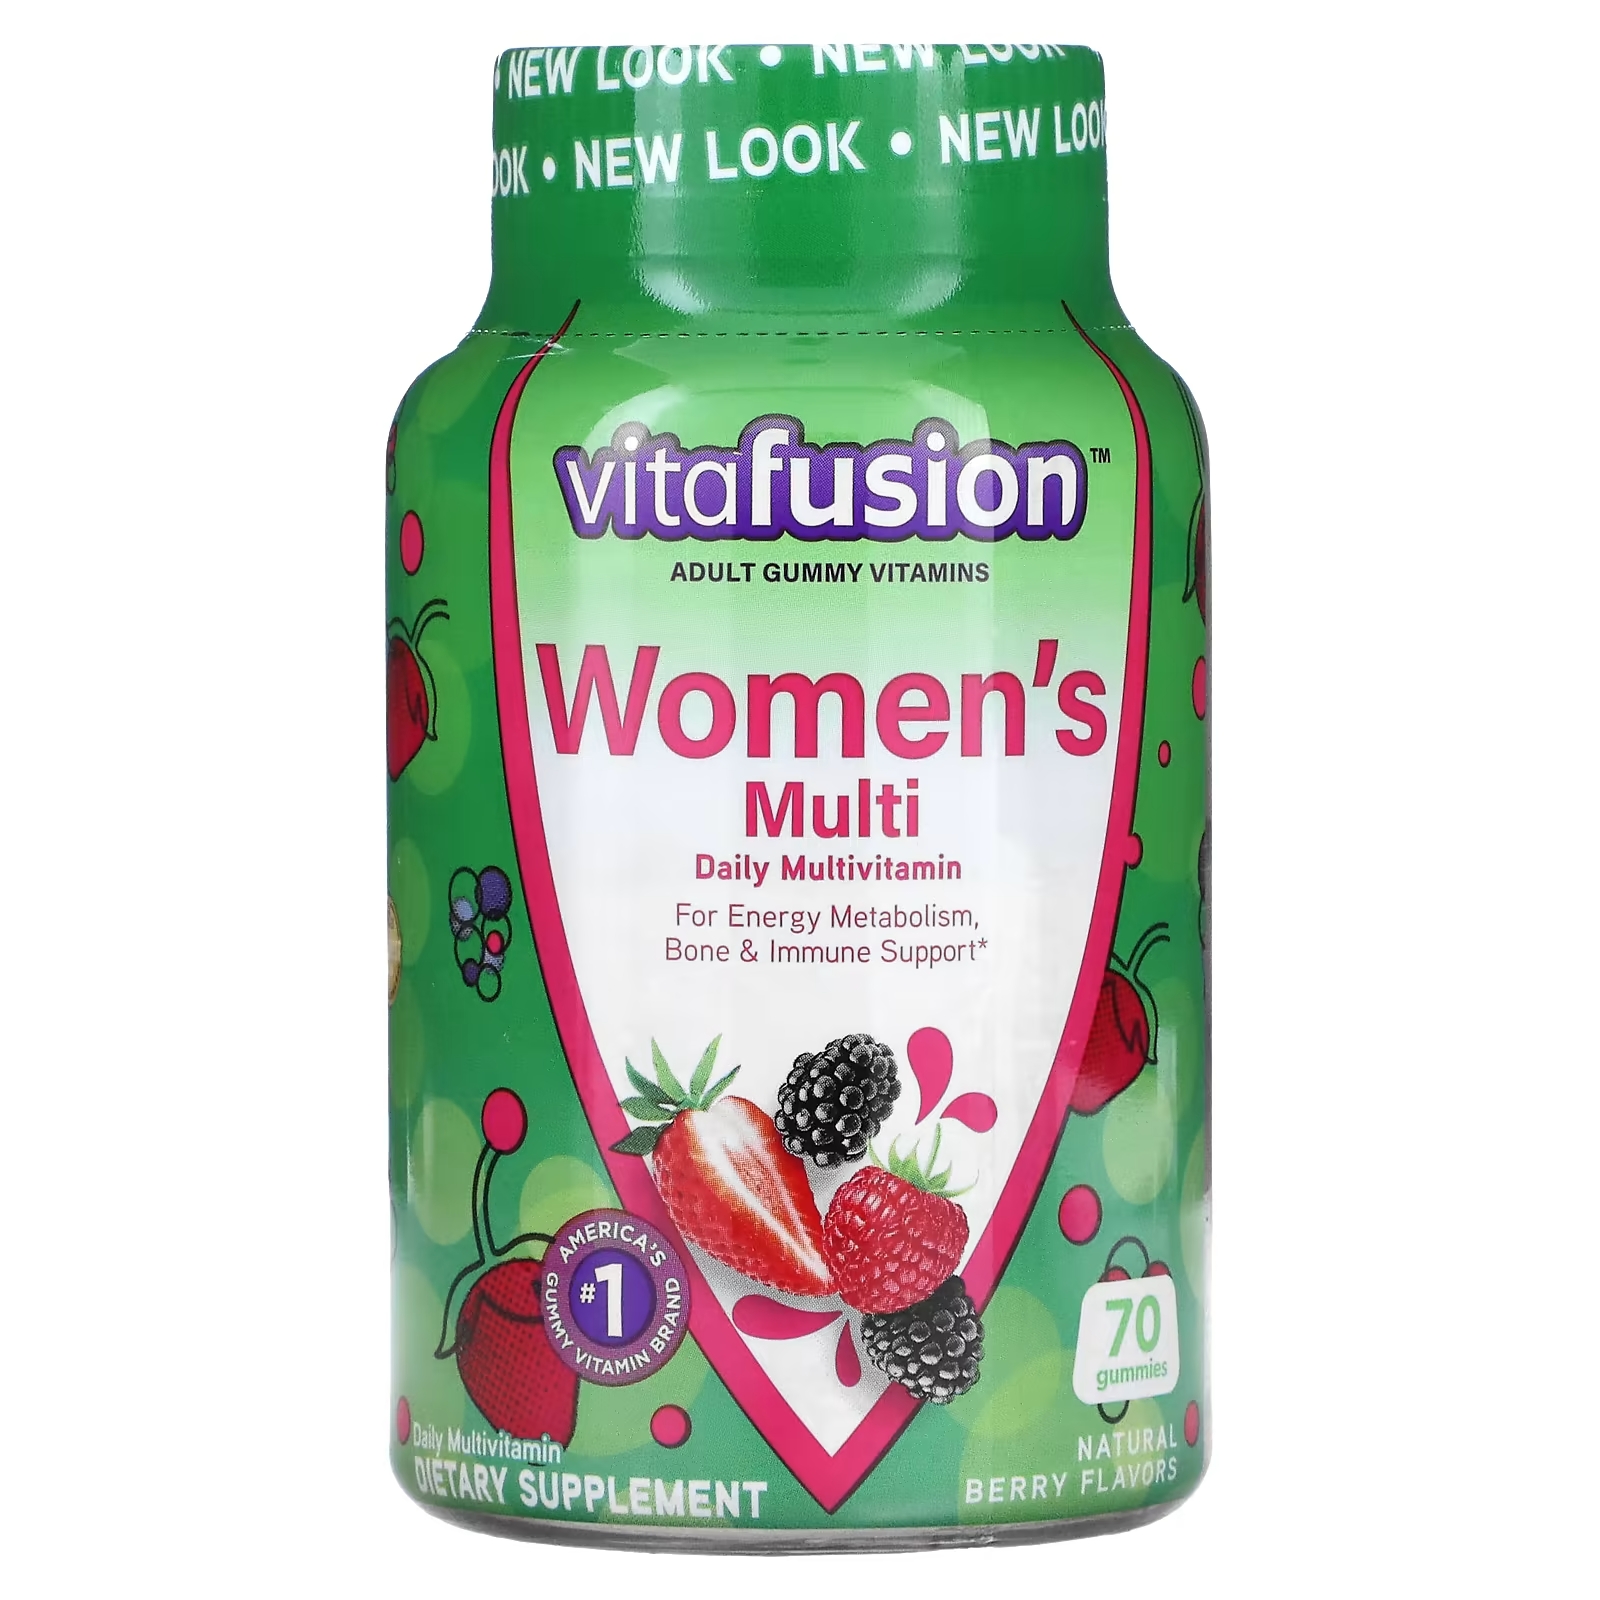 Мультивитаминный Комплекс для Женщин VitaFusion, вкус натуральных ягод, 70 жевательных таблеток цена и фото